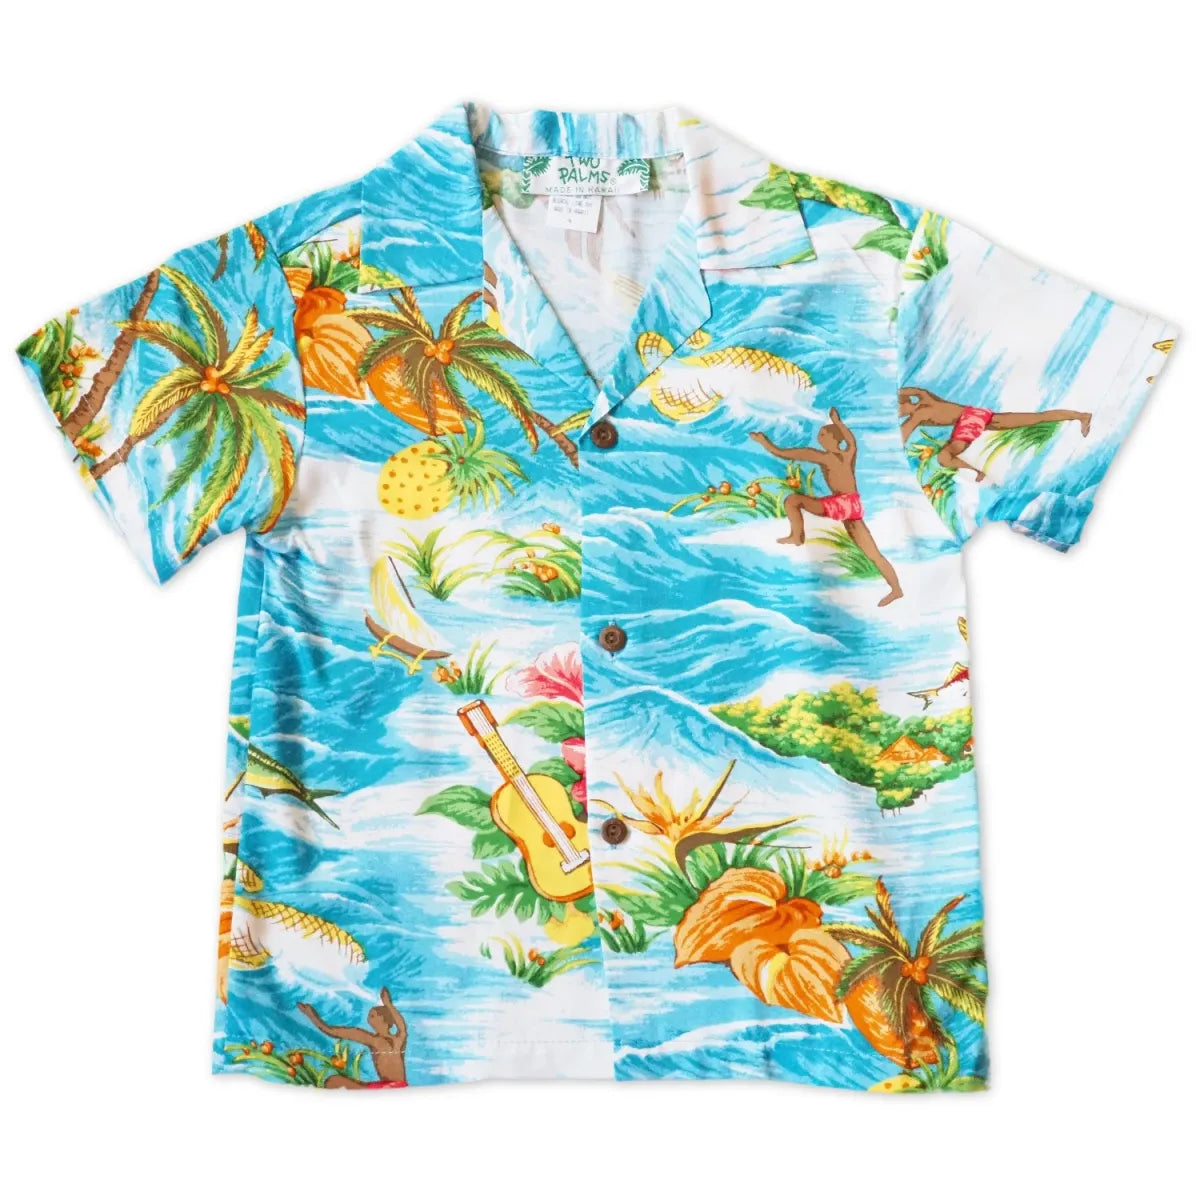 Ocean life teal hawaiian boy shirt